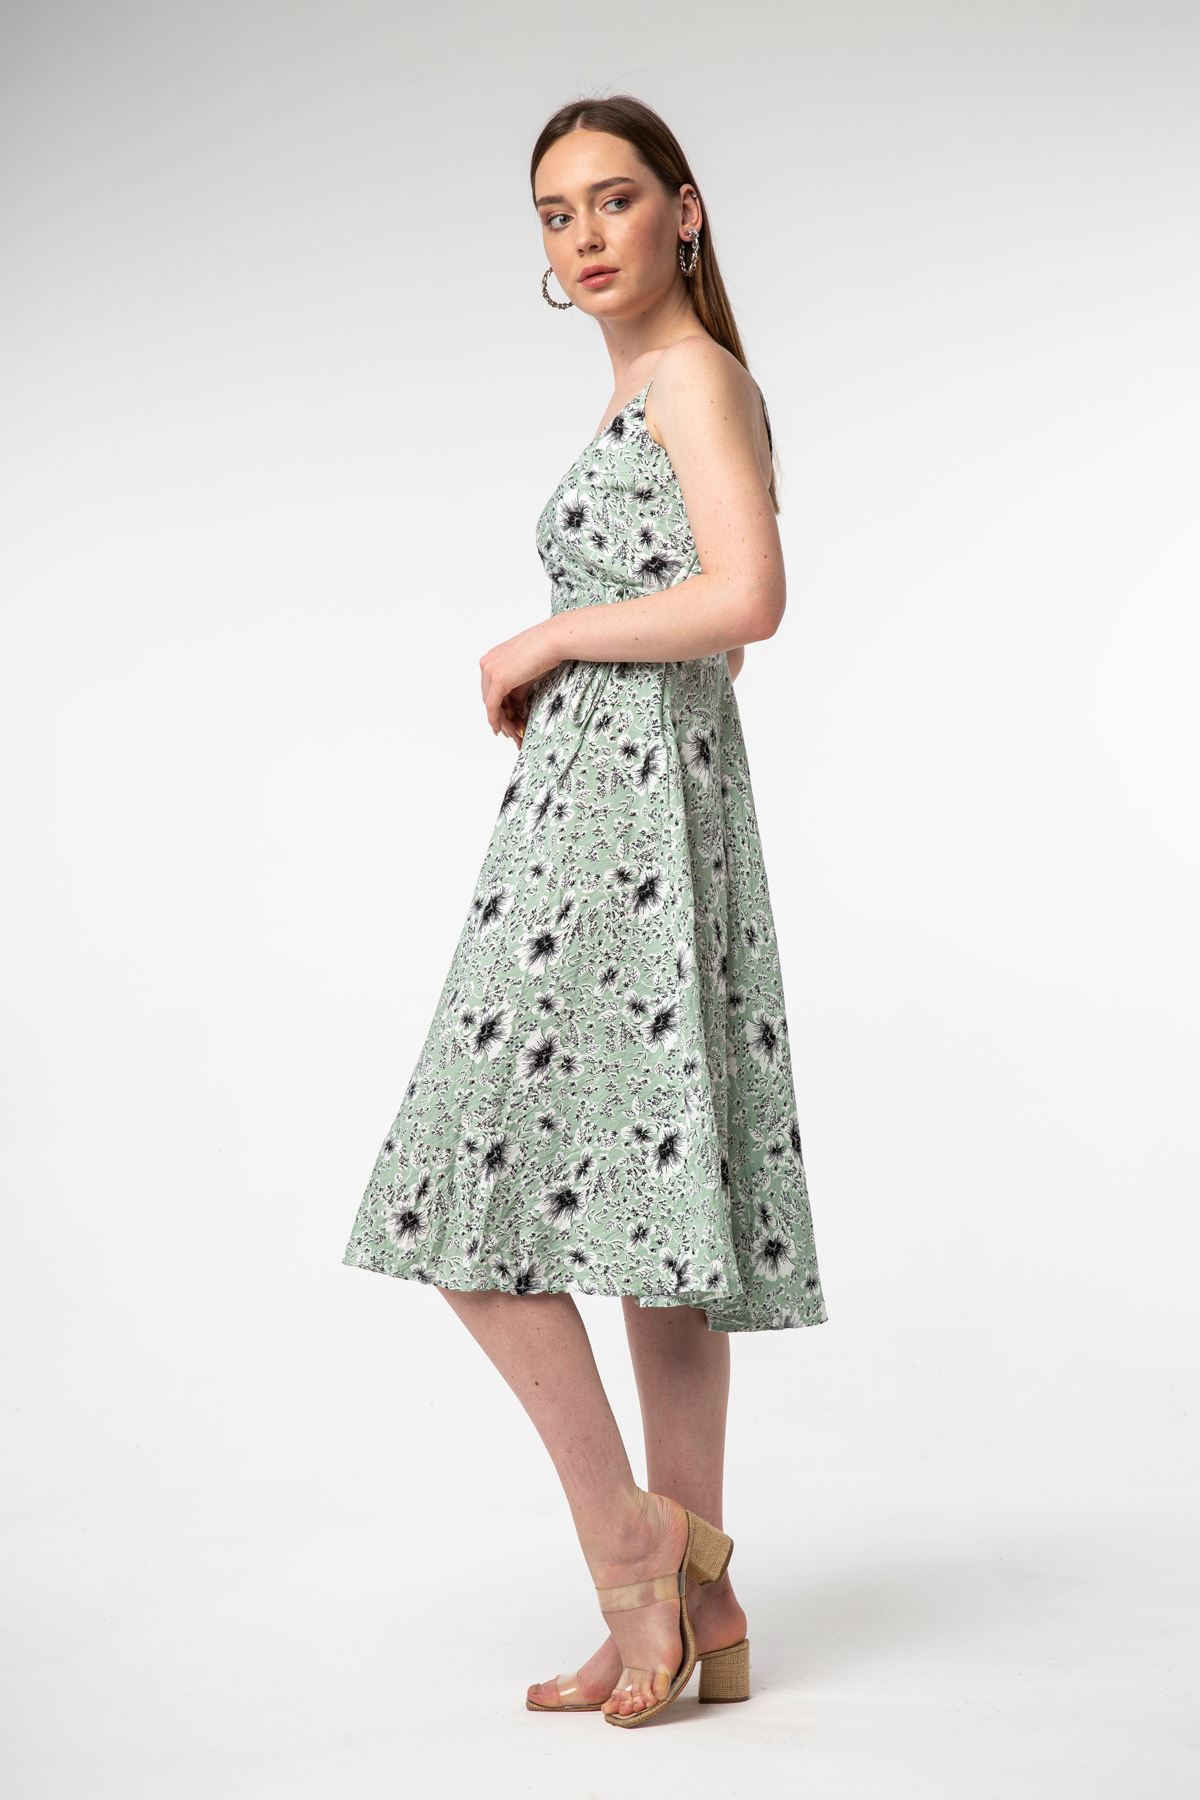 Empirme Kumaş Askılı V Yaka Tam Kalıp Çiçek Desenli Kadın Elbise-Mint